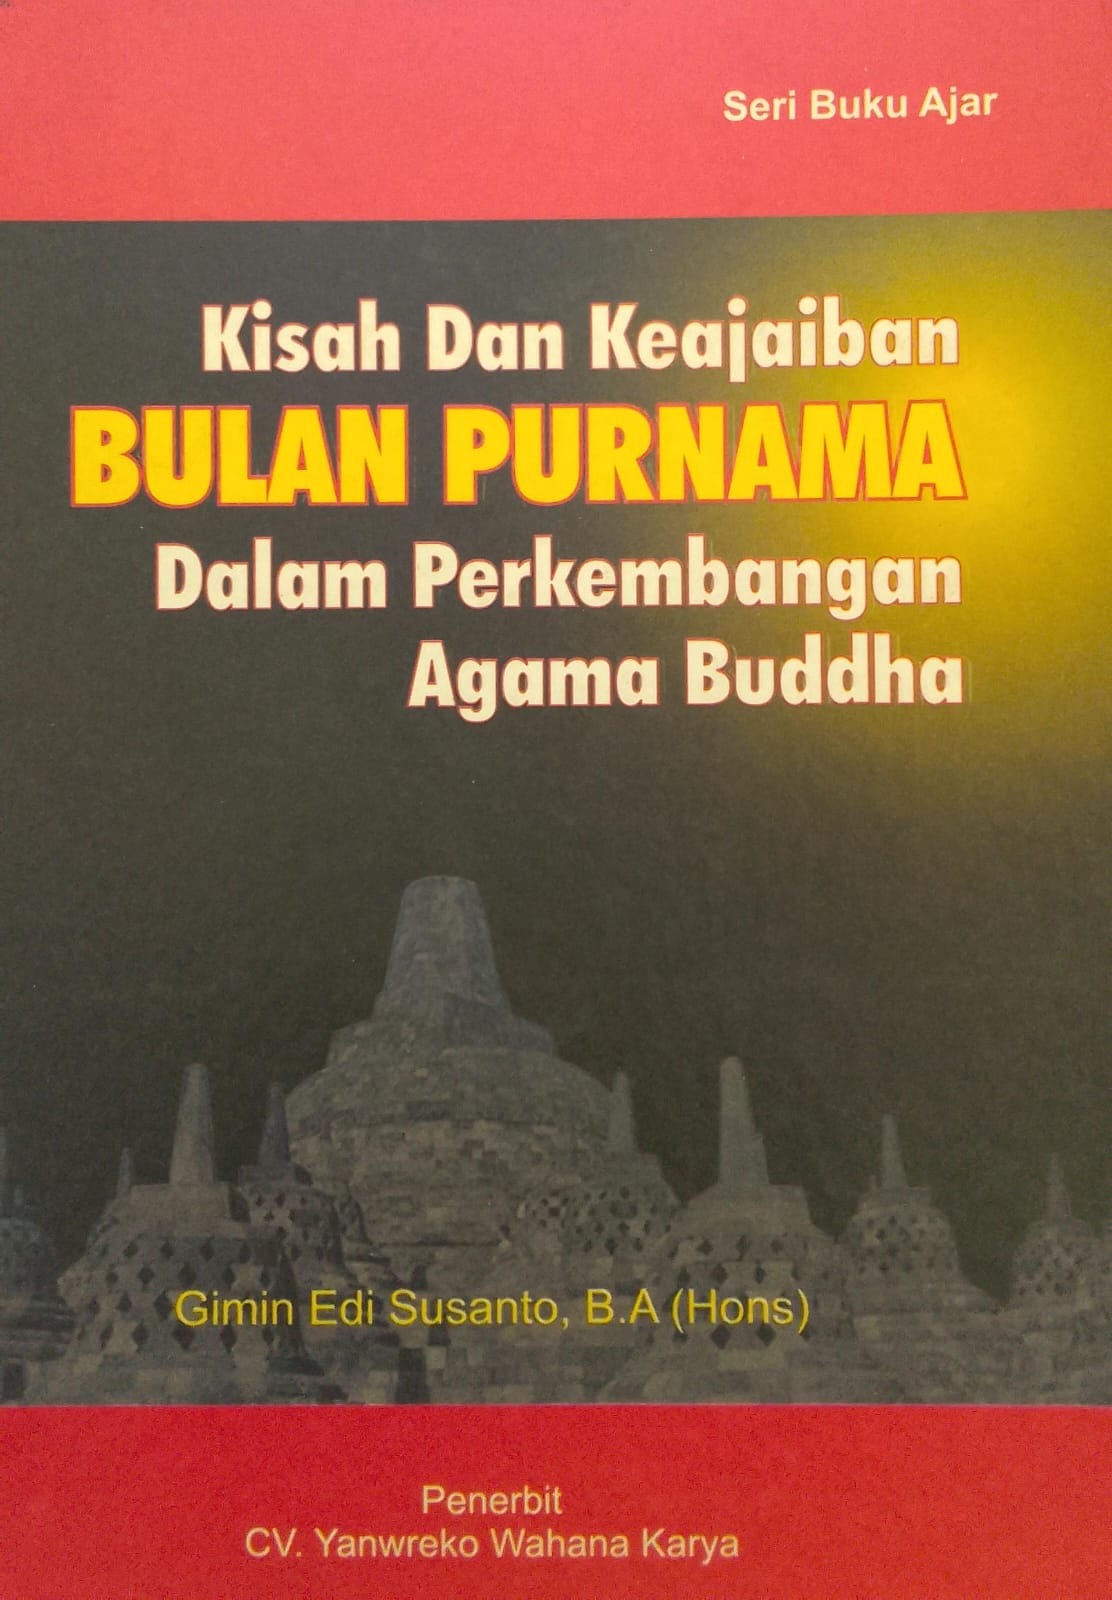 Kisah dan Keajaiban Bulan Purnama Dalam Perkembangan Agama Buddha